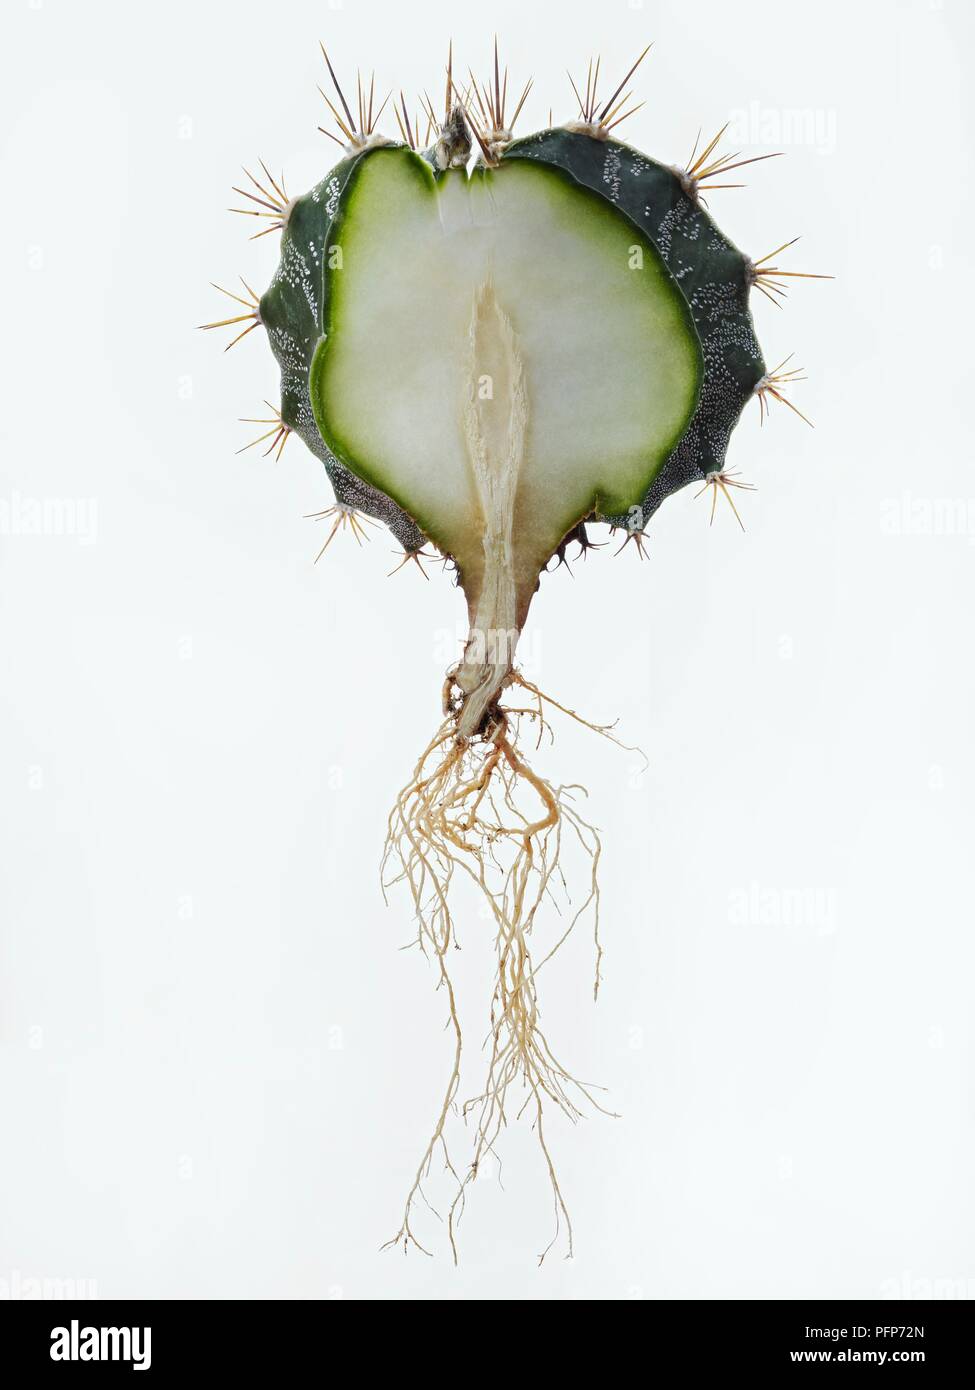 Astrophytum ornatum (del fratello cofano) che mostra la sezione trasversale dello stelo, polpa, i picchi e le radici Foto Stock